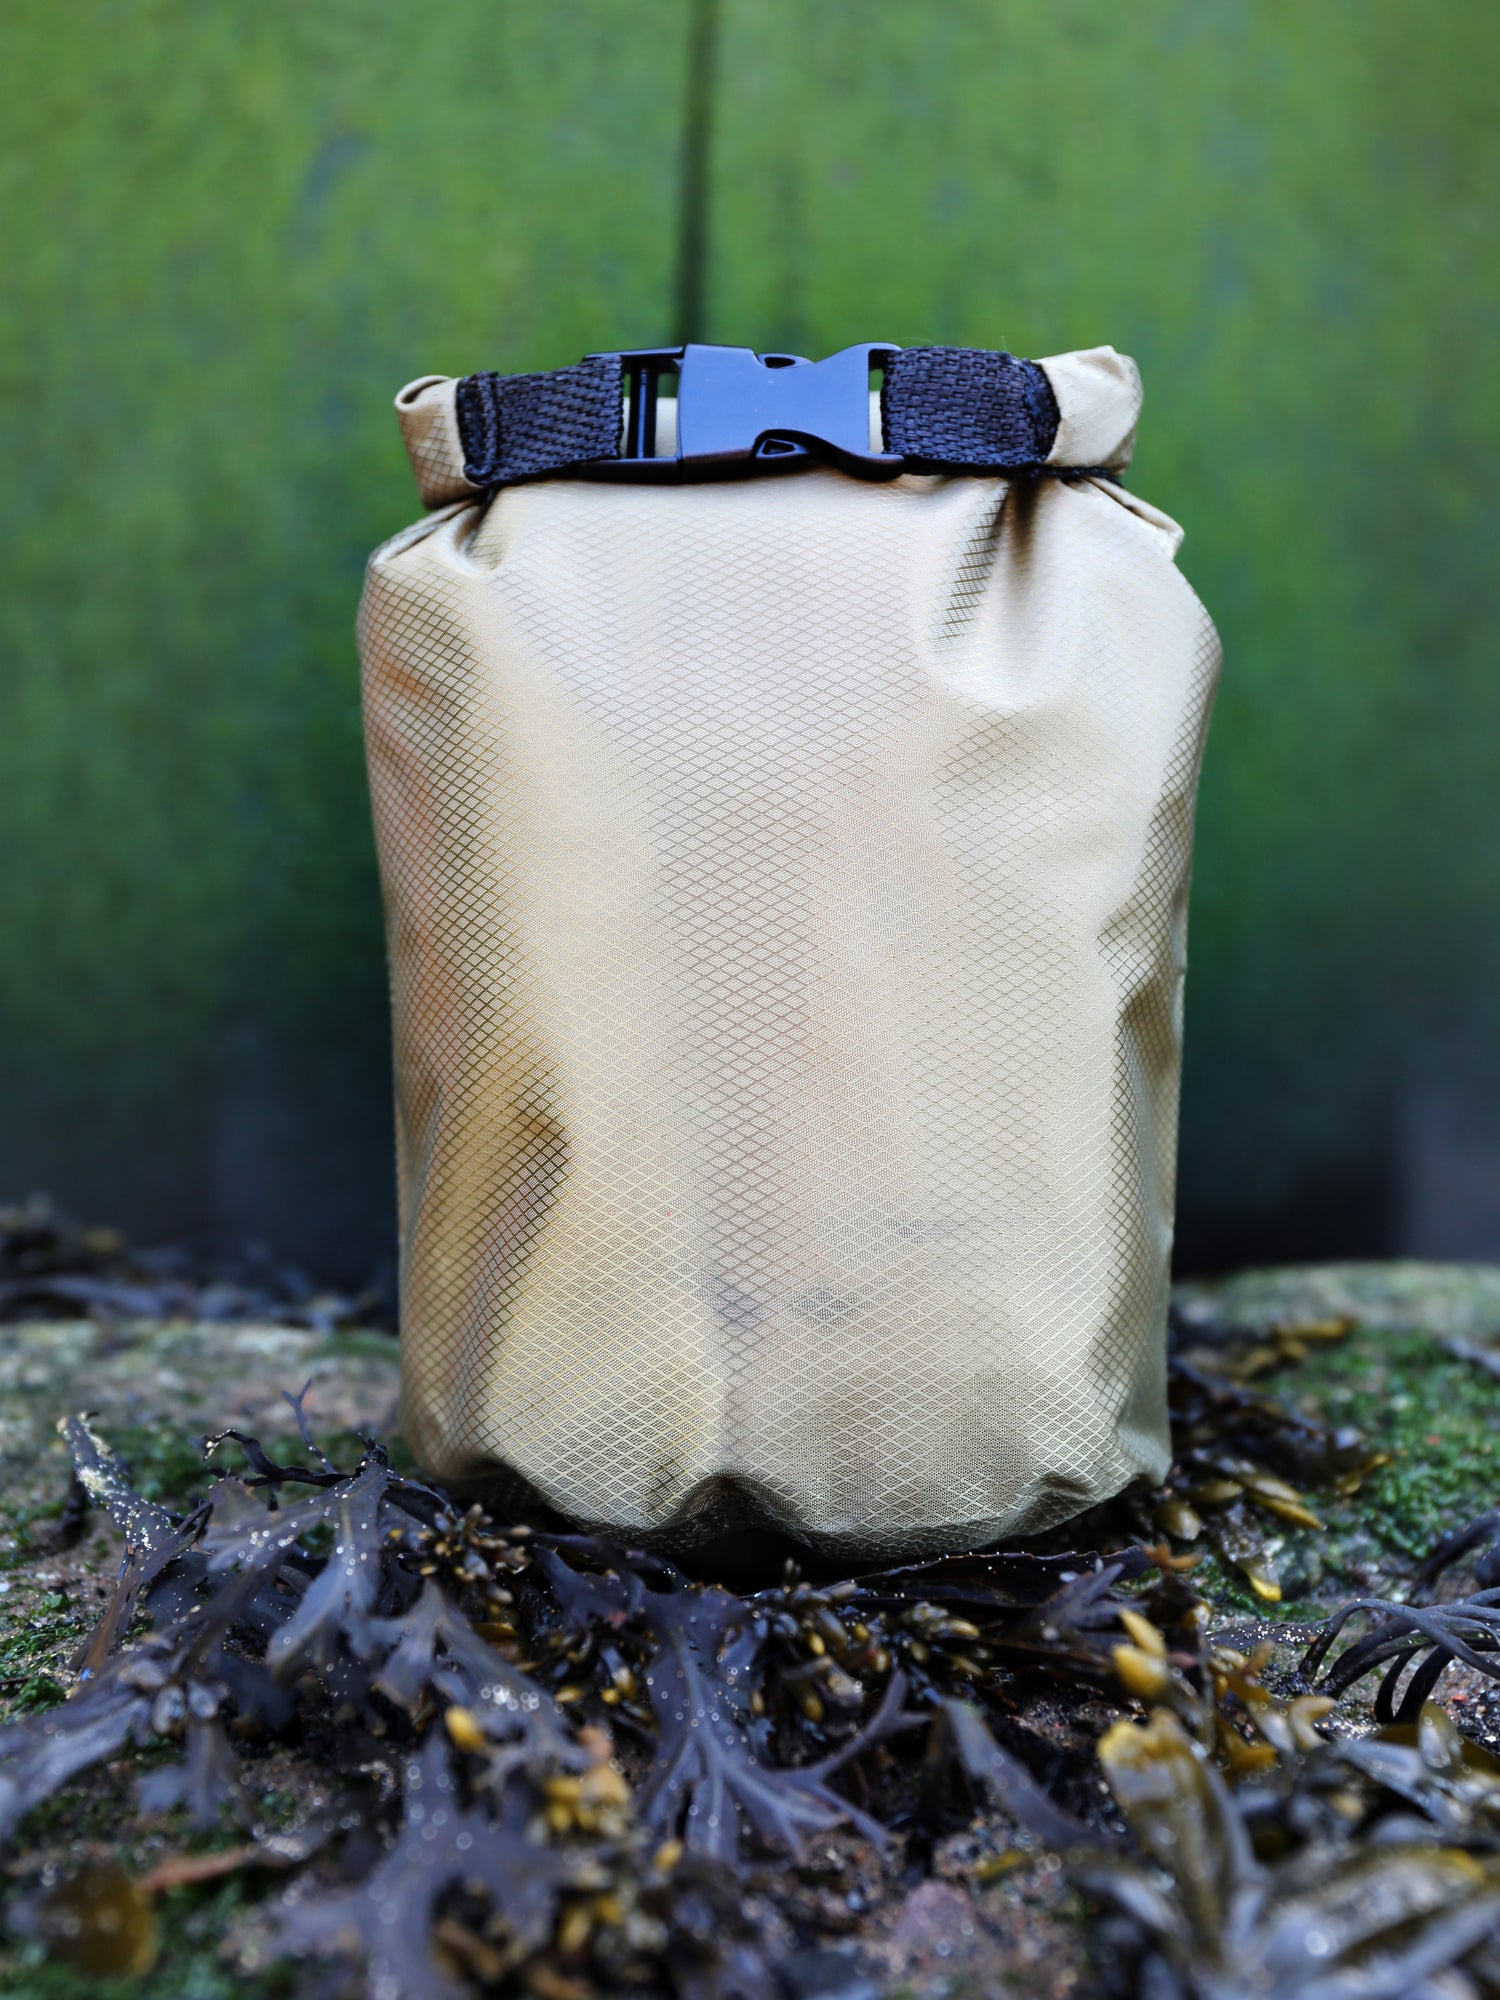 Army Green Waterproof Bag